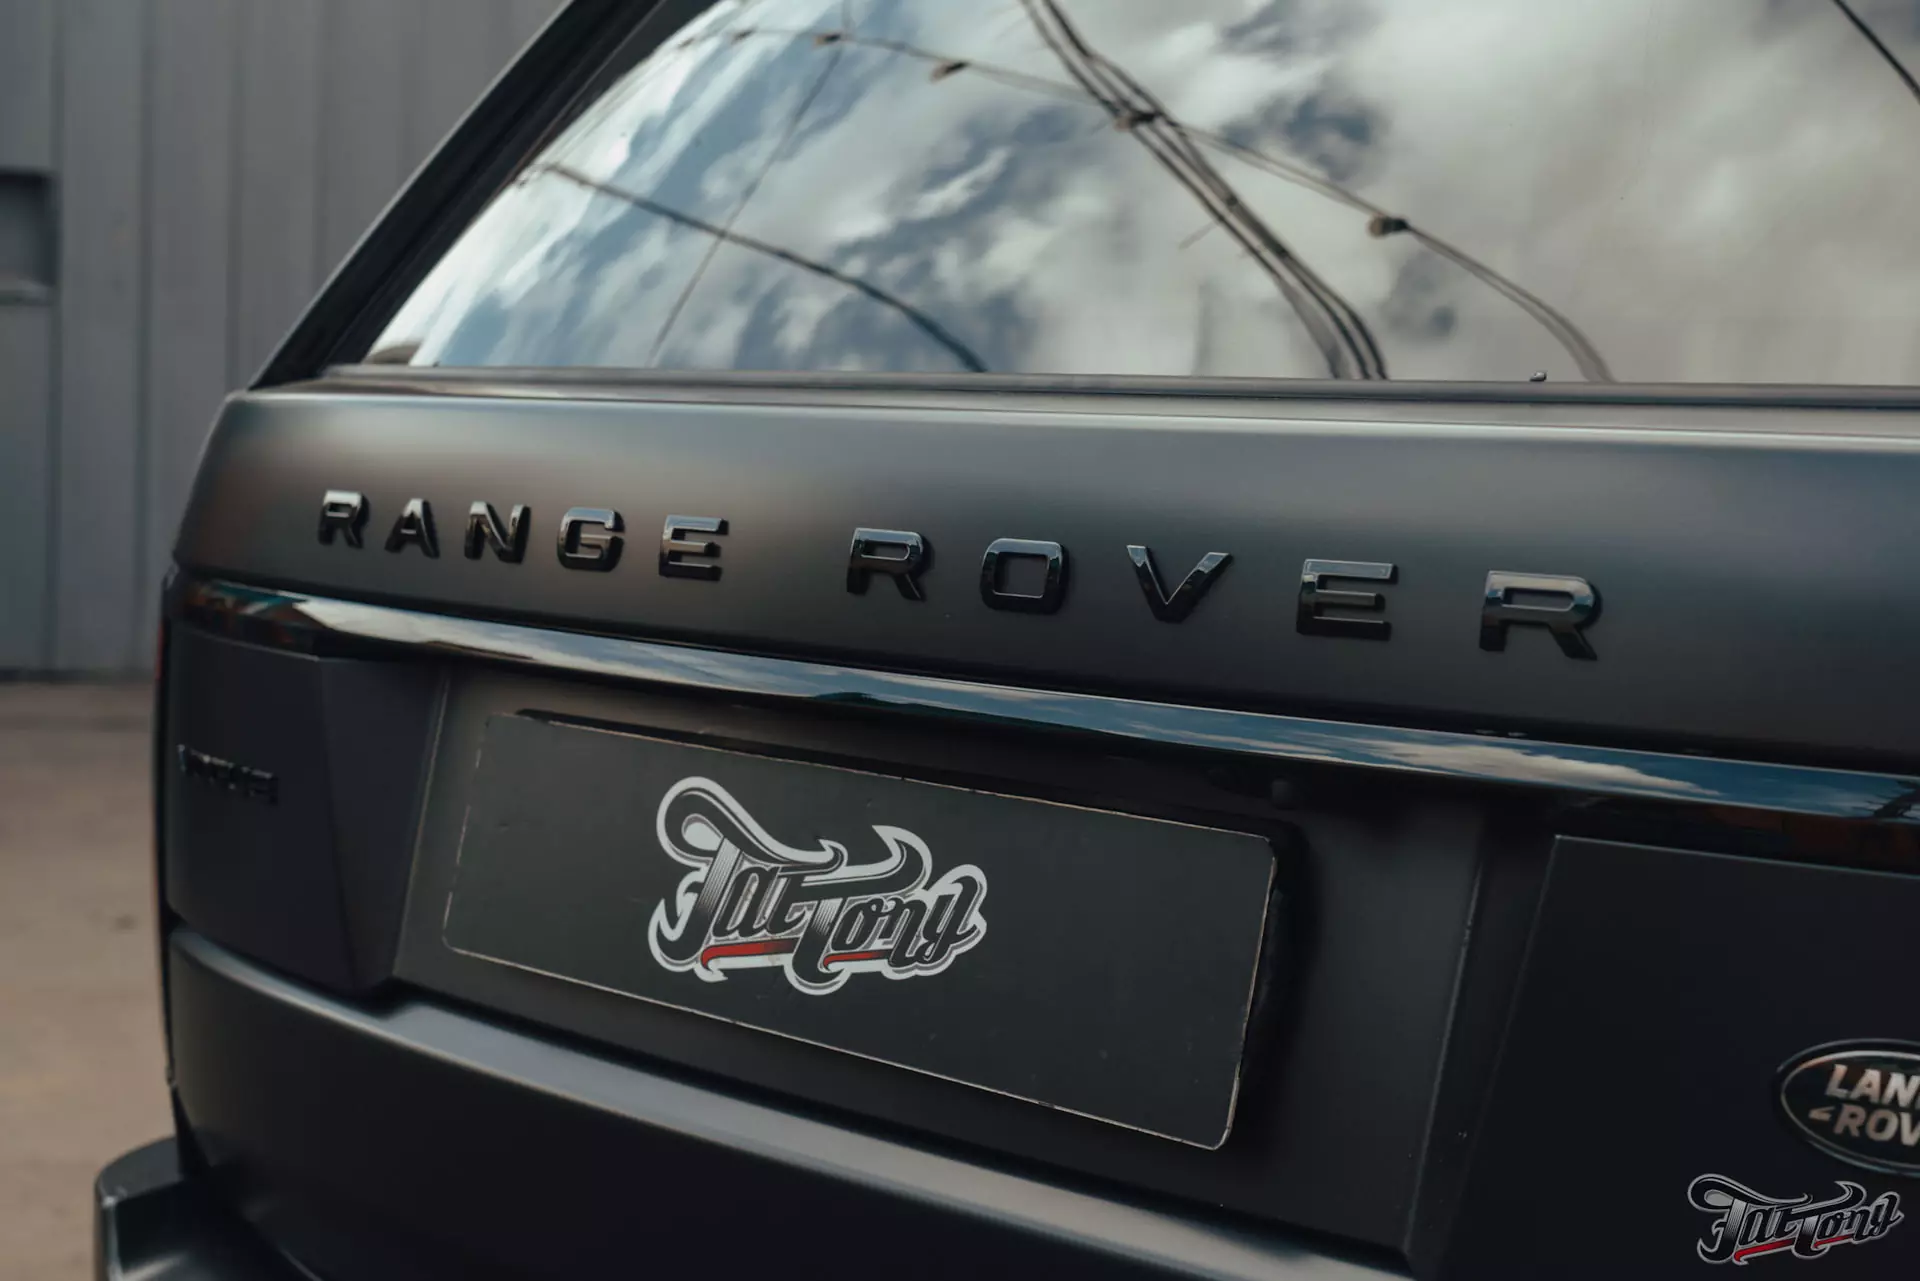 Range Rover Vogue. Оклейка в матовый полиуретан, антихром. Шиномонтаж